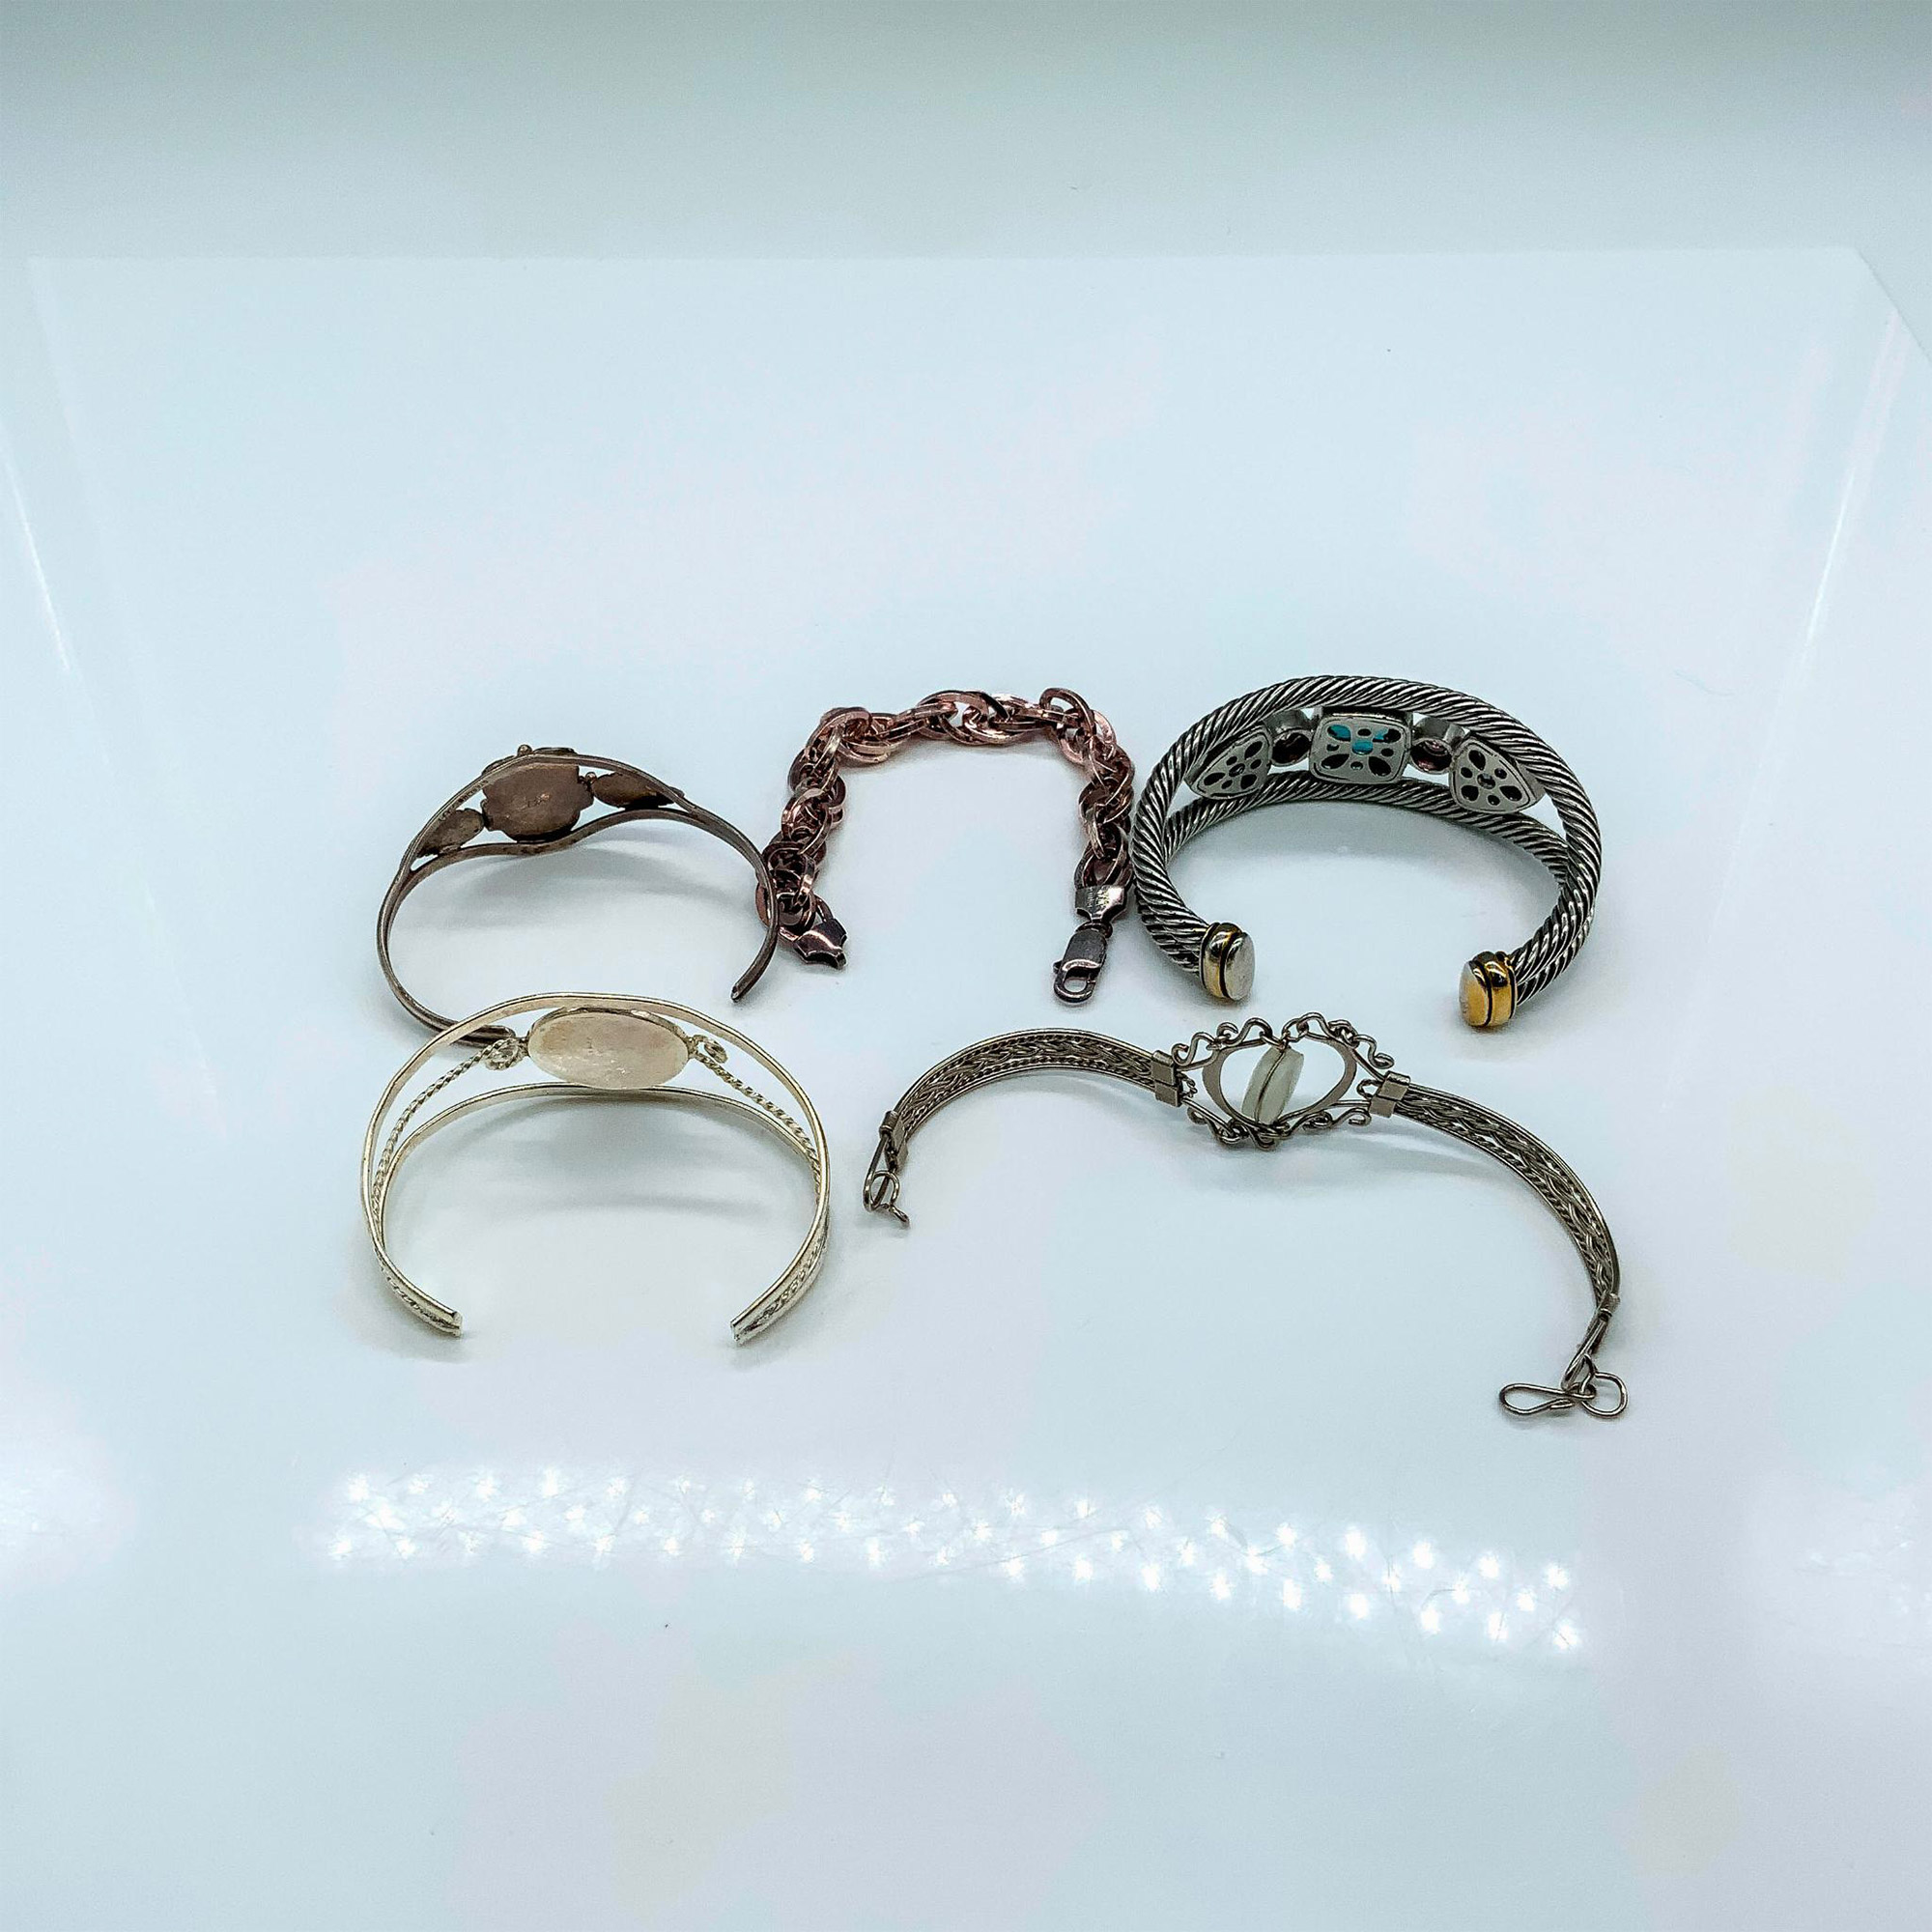 5pcs Unique Sterling Silver Bracelets - Image 2 of 2